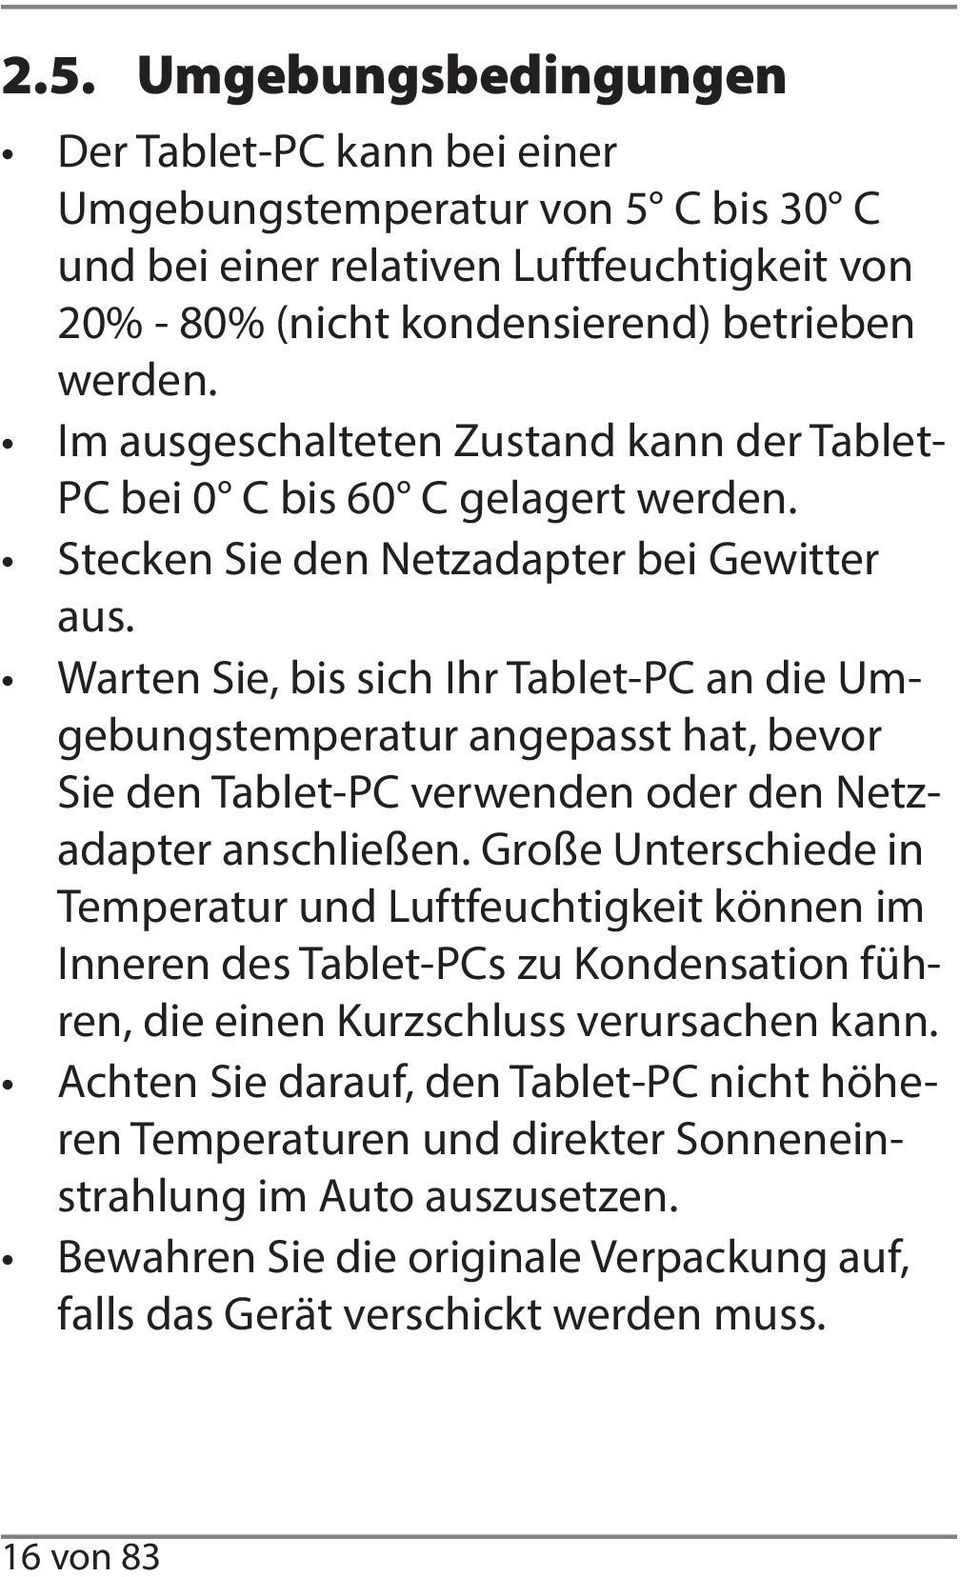 Warten Sie, bis sich Ihr Tablet-PC an die Umgebungstemperatur angepasst hat, bevor Sie den Tablet-PC verwenden oder den Netzadapter anschließen.